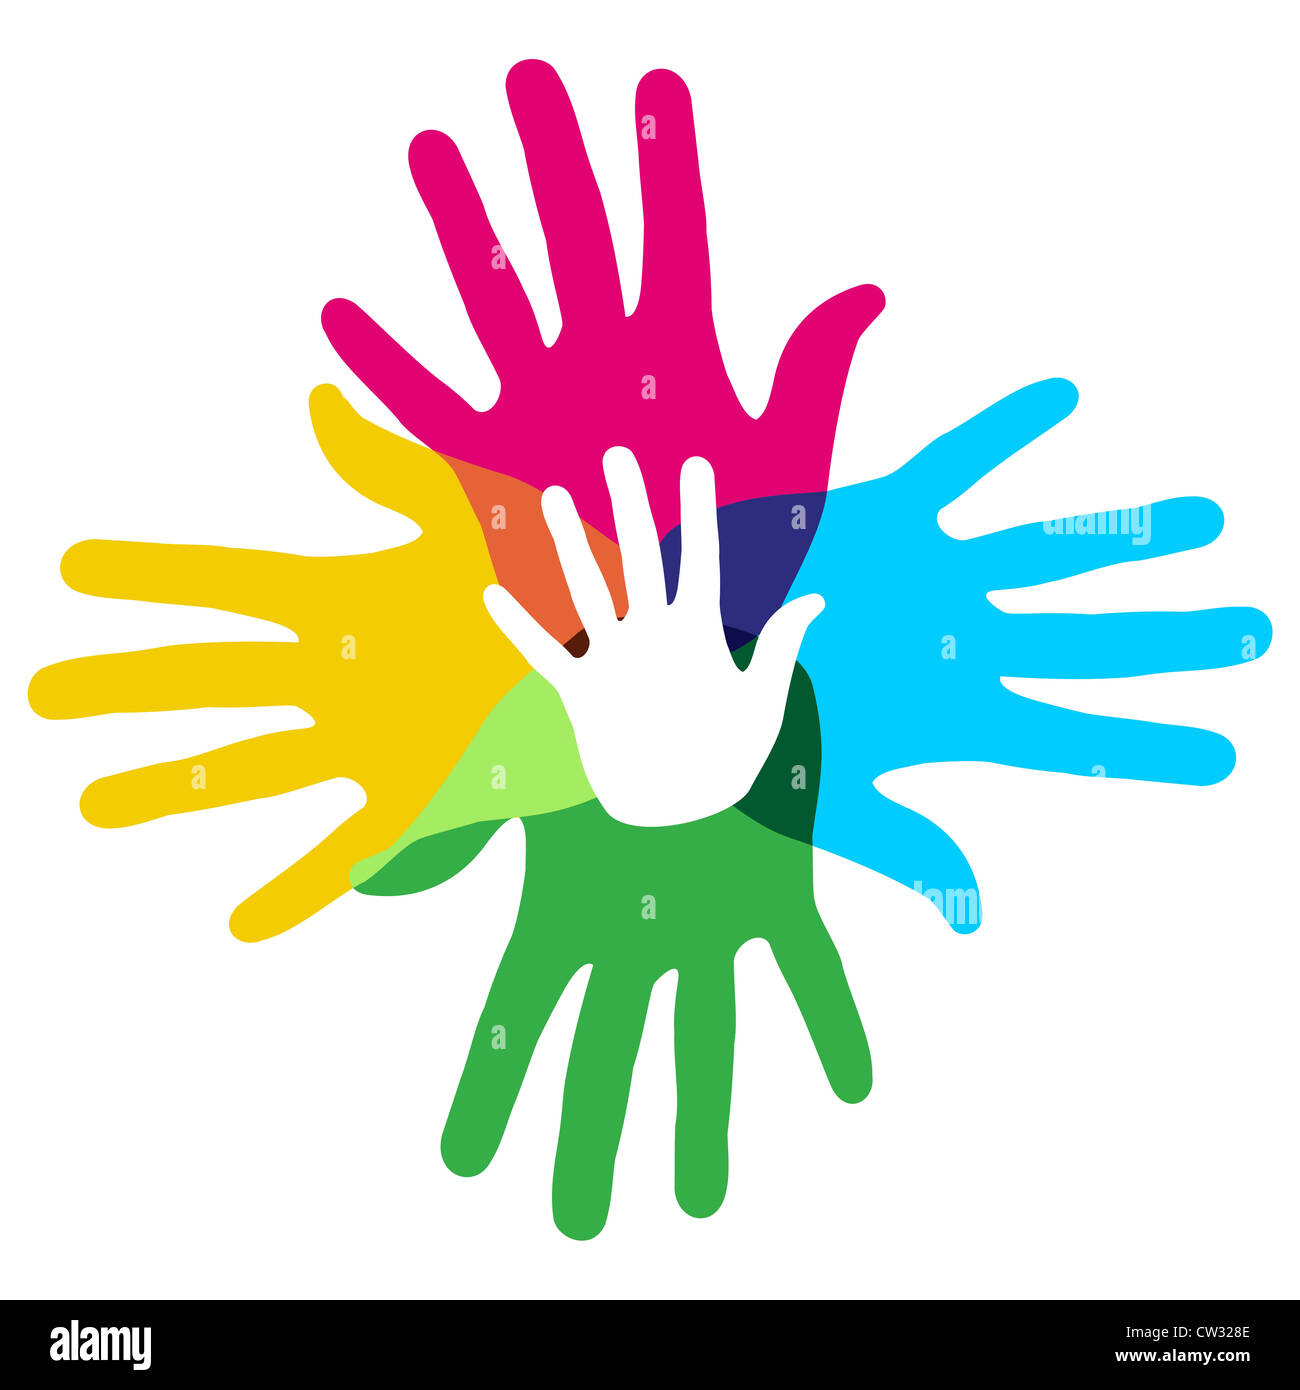 Multicolor kreative Vielfalt Hände Symbol. Vektor-Illustration für einfache Handhabung und individuelle Färbung geschichtet. Stockfoto